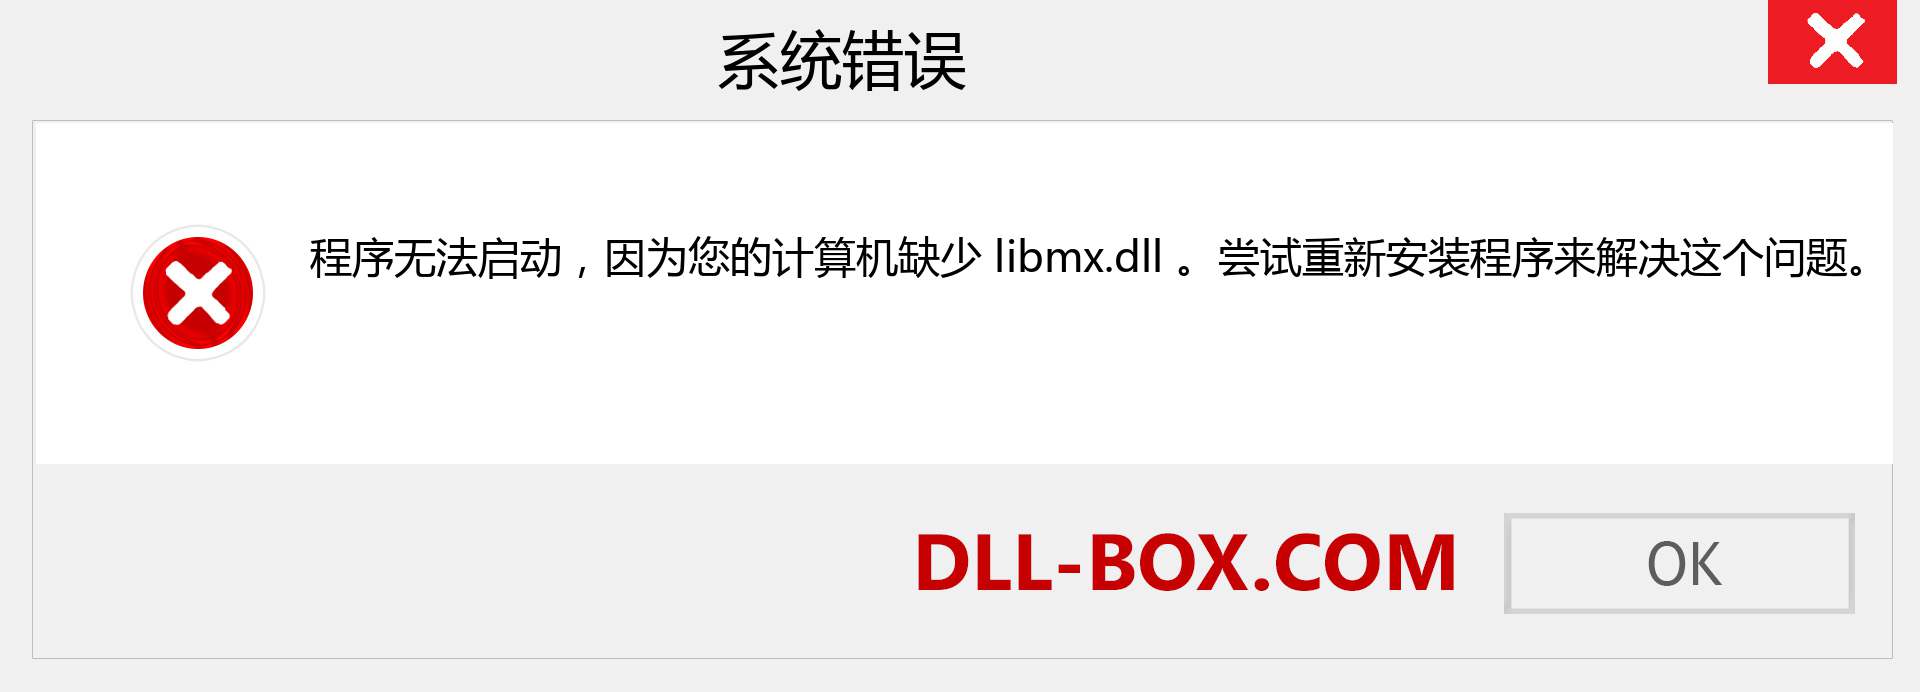 libmx.dll 文件丢失？。 适用于 Windows 7、8、10 的下载 - 修复 Windows、照片、图像上的 libmx dll 丢失错误